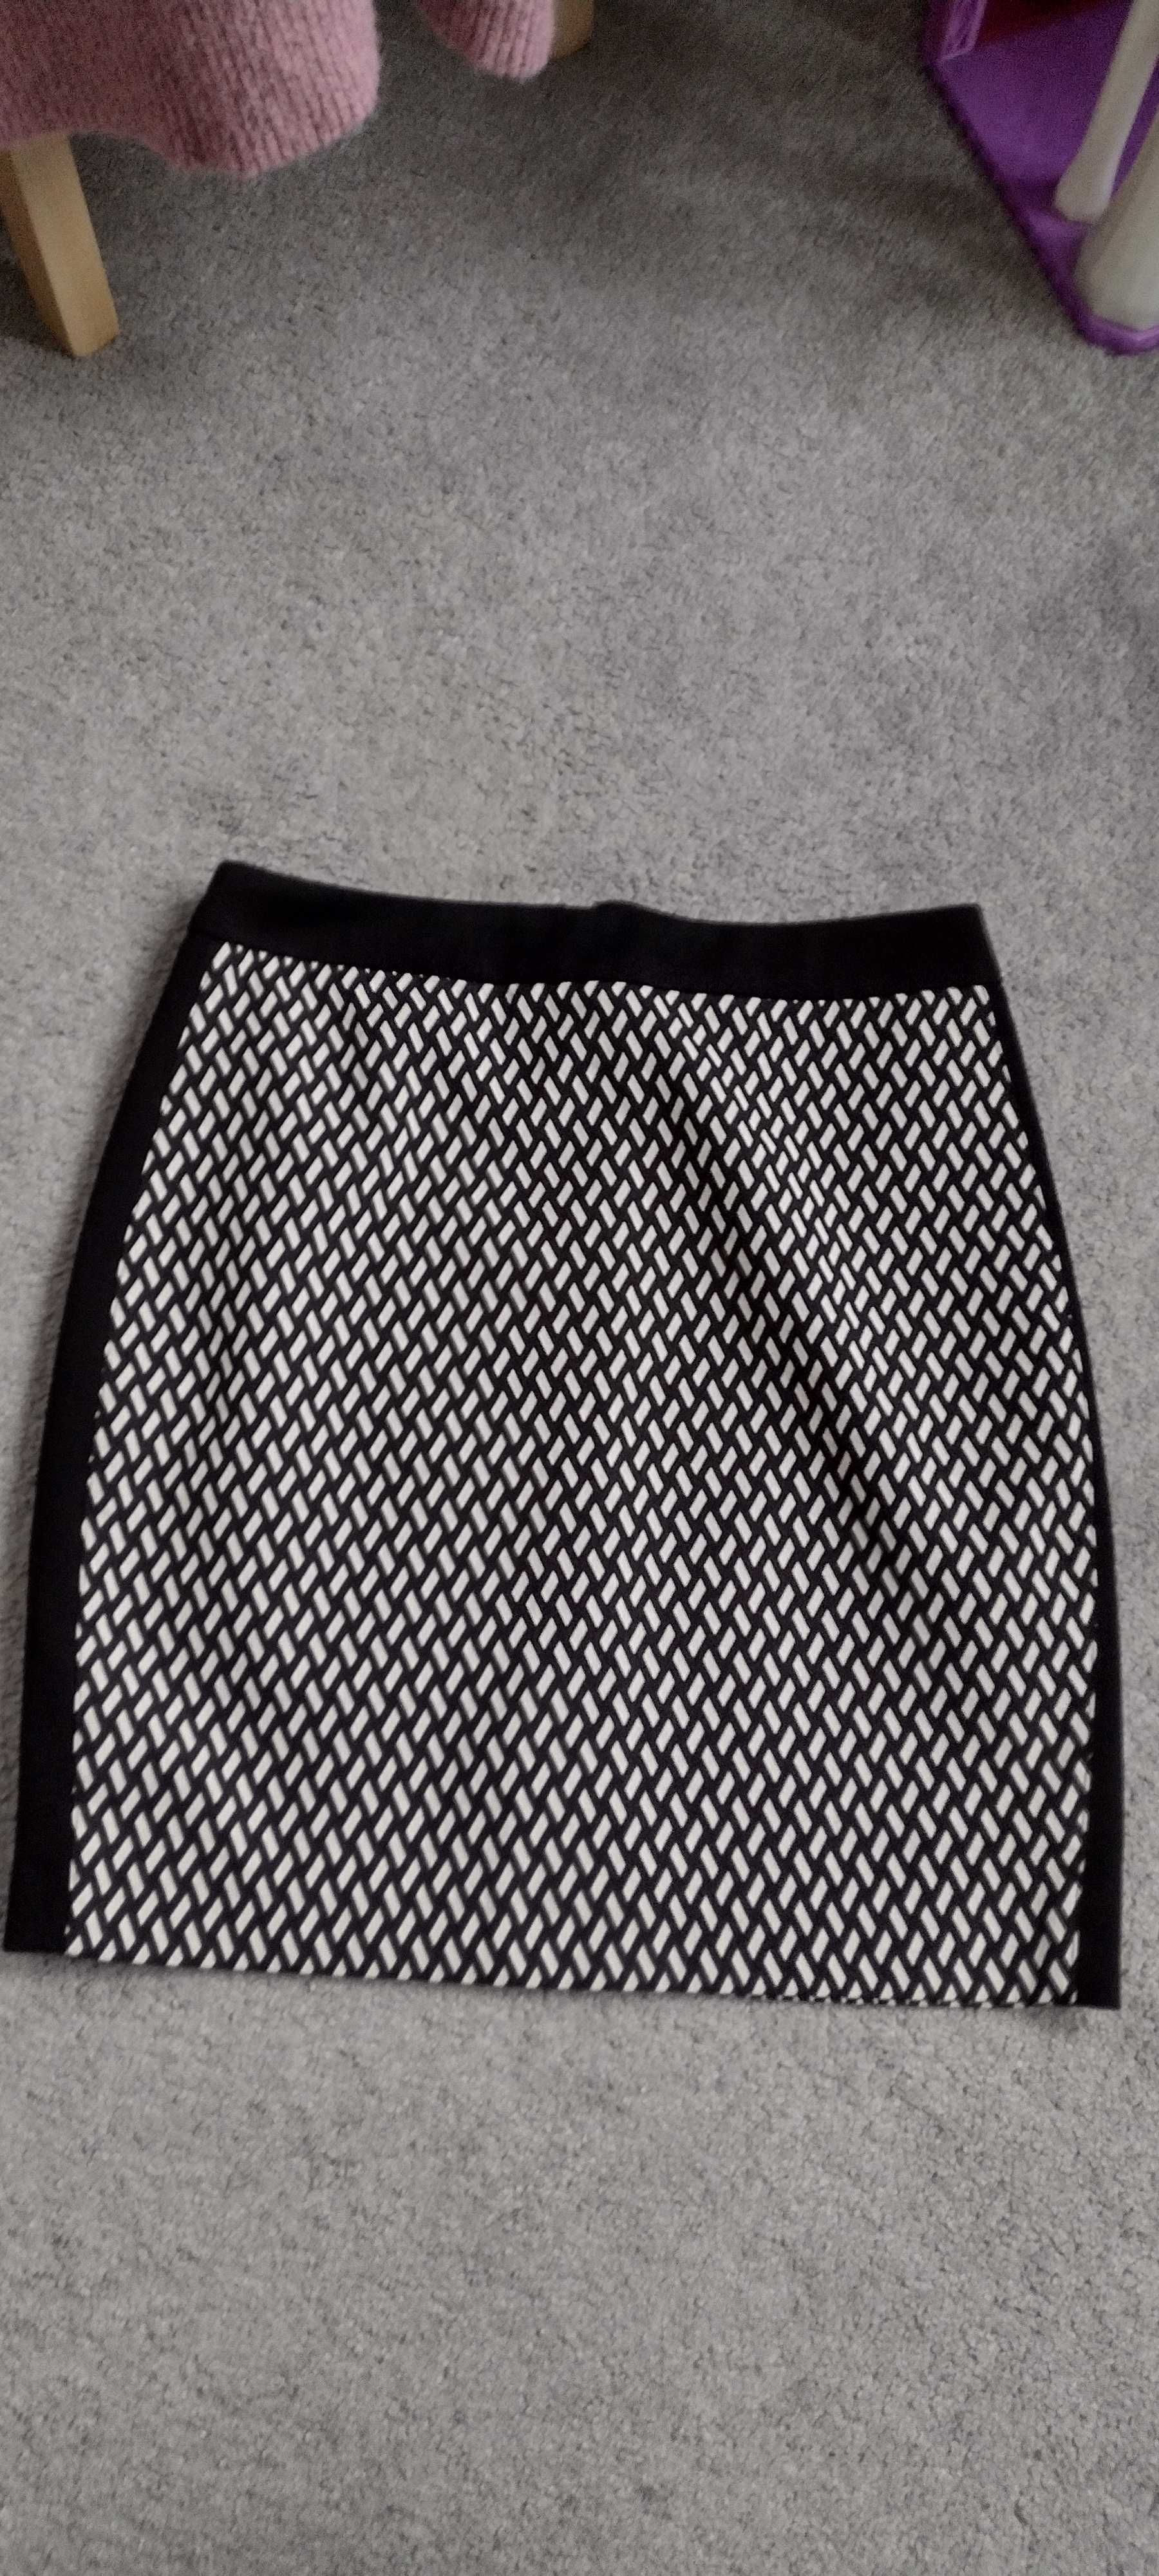 Spódnica Orsay 36 S biało czarny wzór ZIP nowa